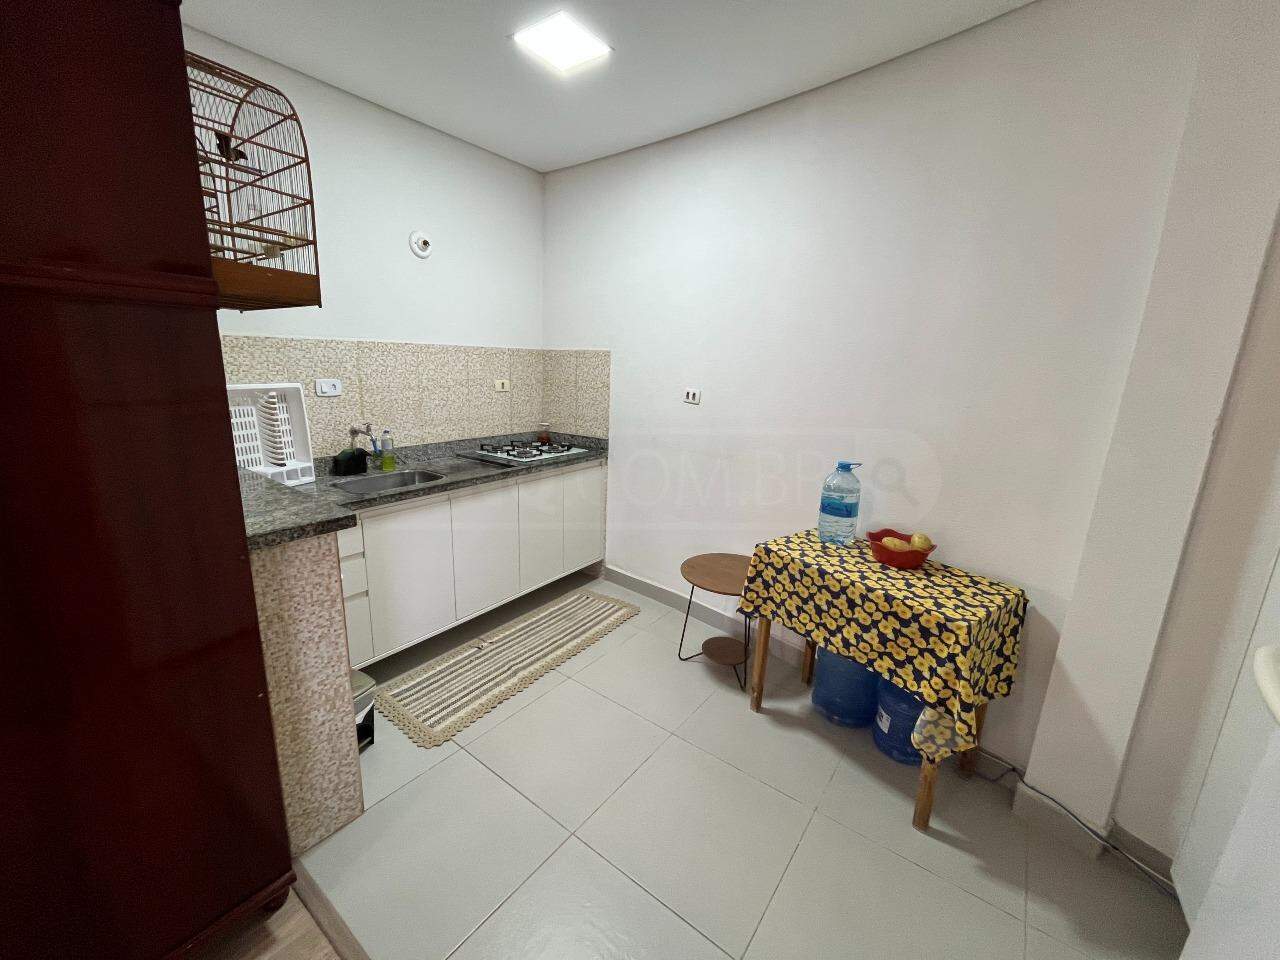 Casa à venda, 4 quartos, sendo 3 suítes, 2 vagas, no bairro Jardim Abaeté em Piracicaba - SP